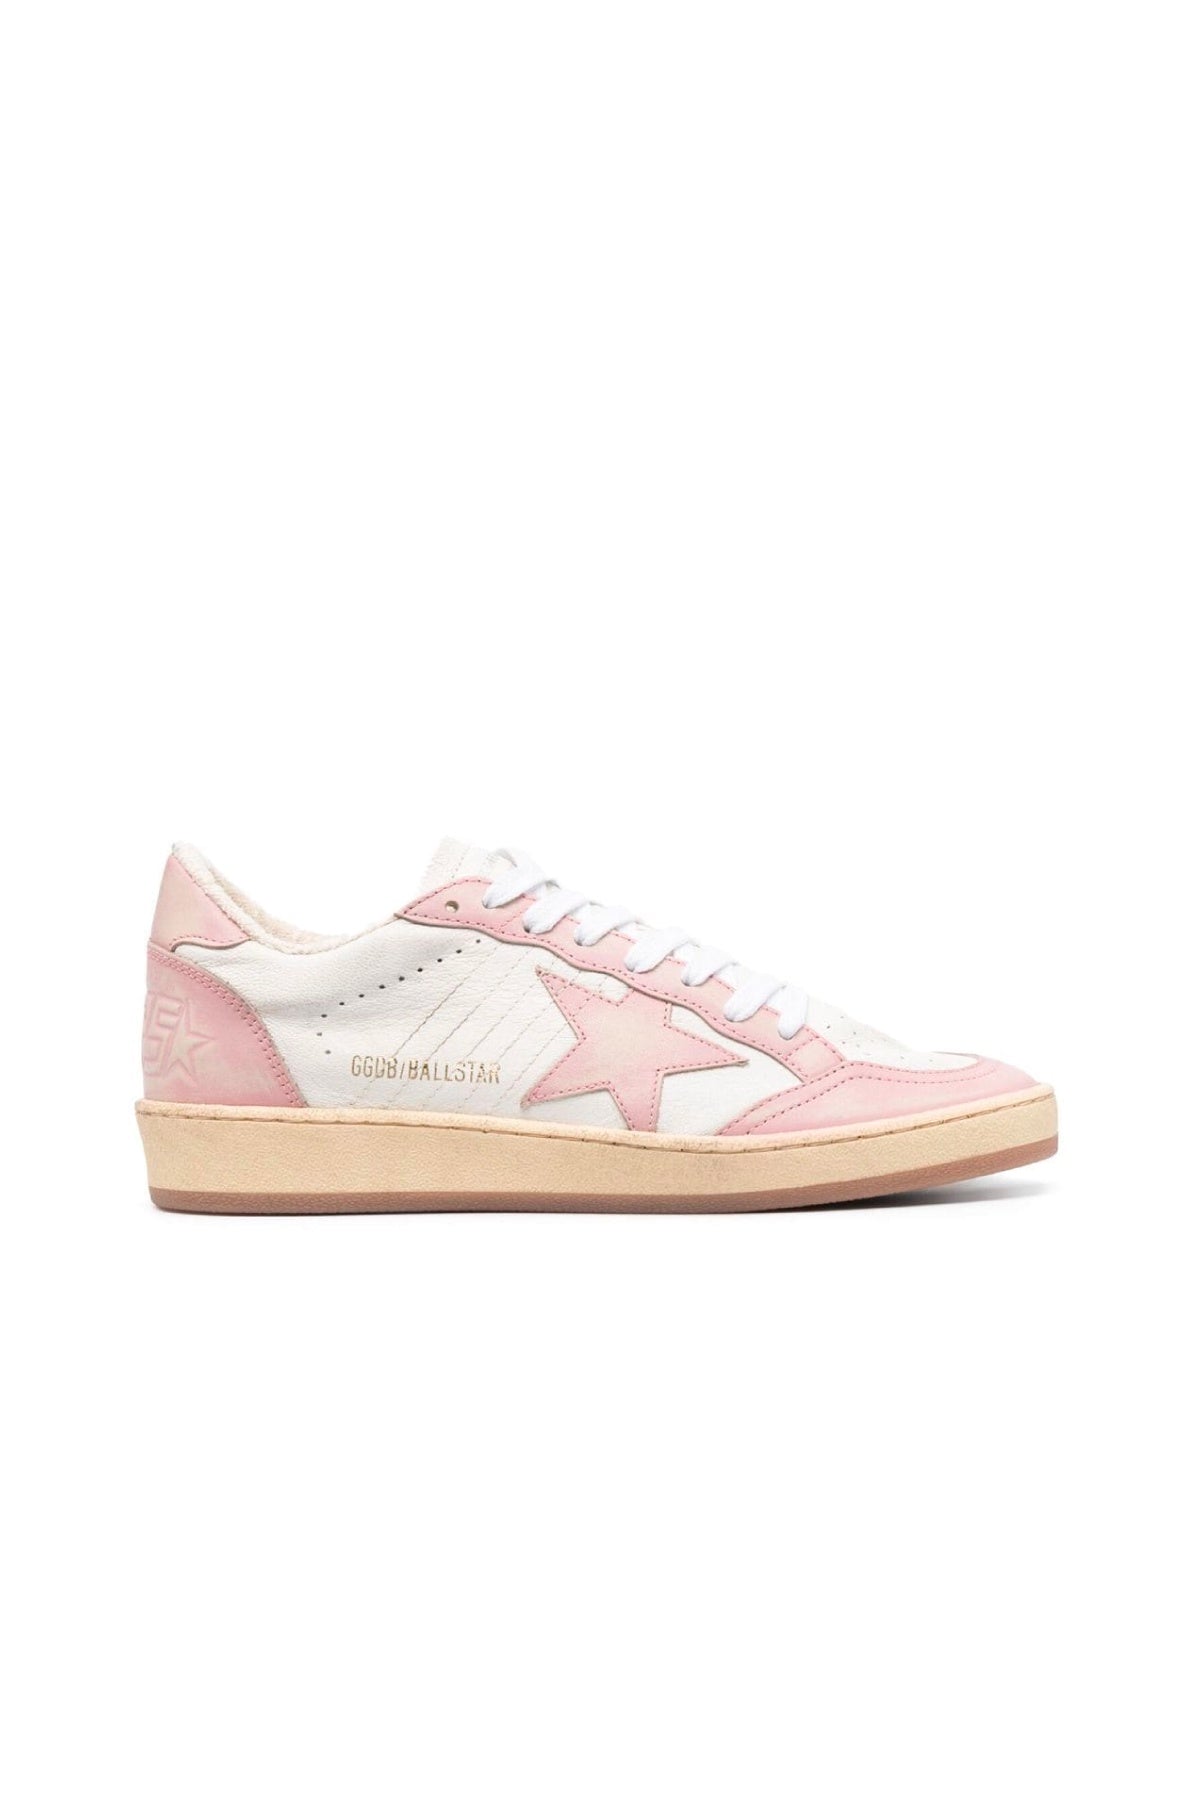 Golden Goose Ballstar Sneakers - White/ Pink